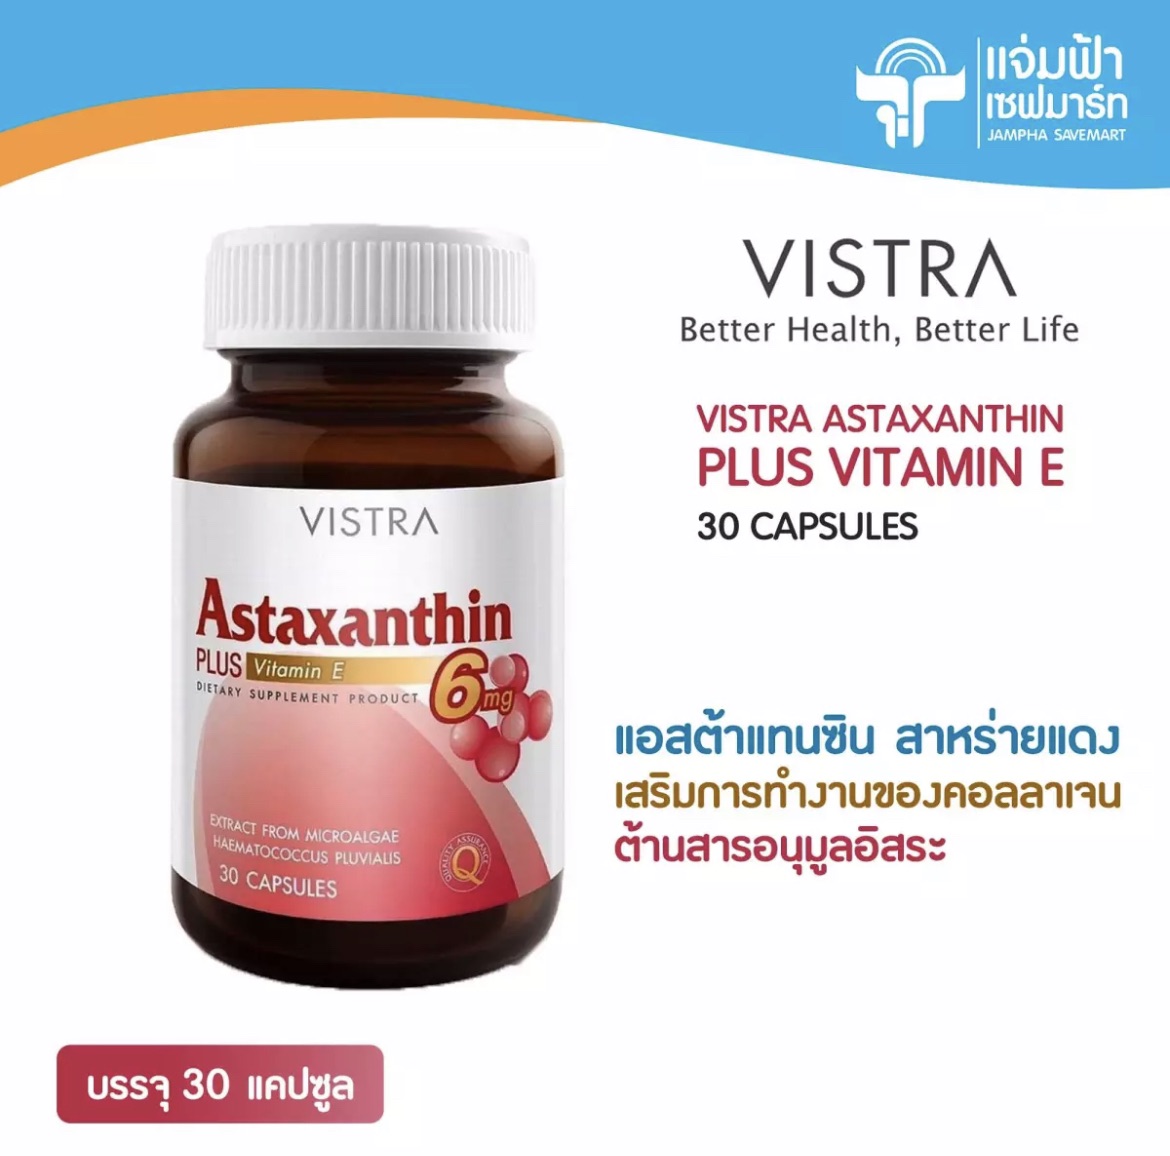 Vistra Astaxanthin วิสทร้า แอสตาแซนธิน 6 มก. พลัส วิตามินอี ผลิตภัณฑ์เสริมอาหาร ขนาด 30 แคปซูล